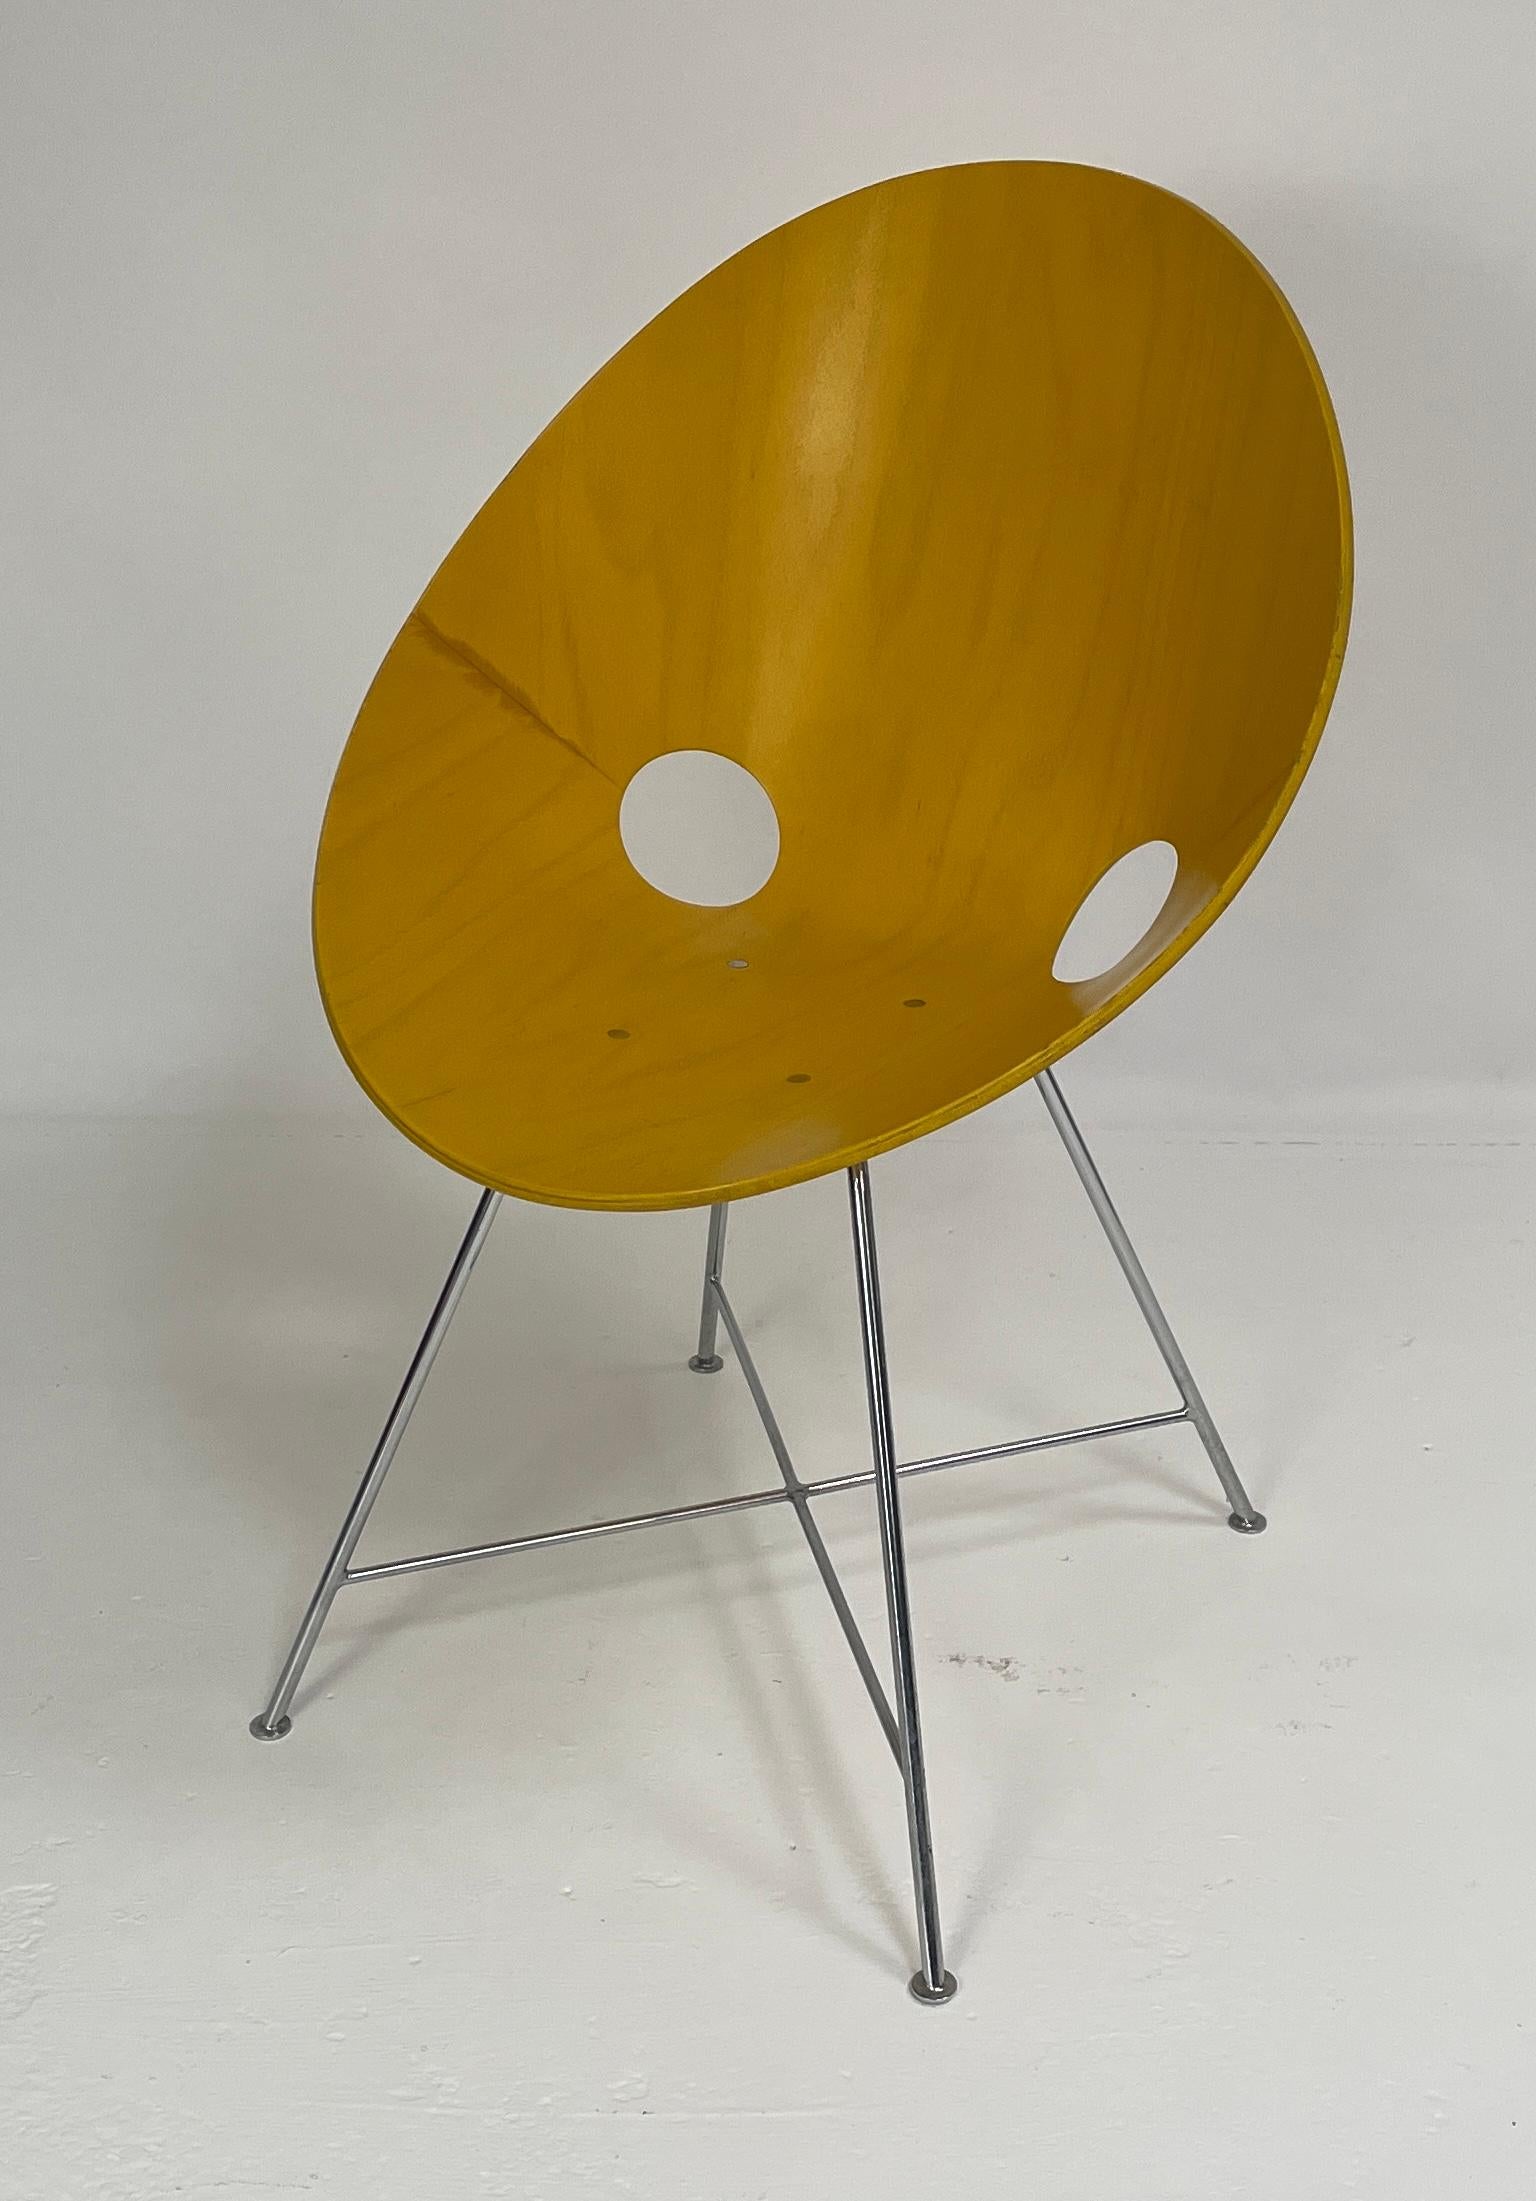 Der Stuhl ST 664, entworfen von Eddie Harlis im Jahr 1954. Thonet stellte die Stühle in Deutschland her. Diese Stühle werden nicht mehr hergestellt. Die  Der Stuhl ist gelb gebeizt und aus gebogenem Sperrholz (Buche) gefertigt. Die Beine sind aus